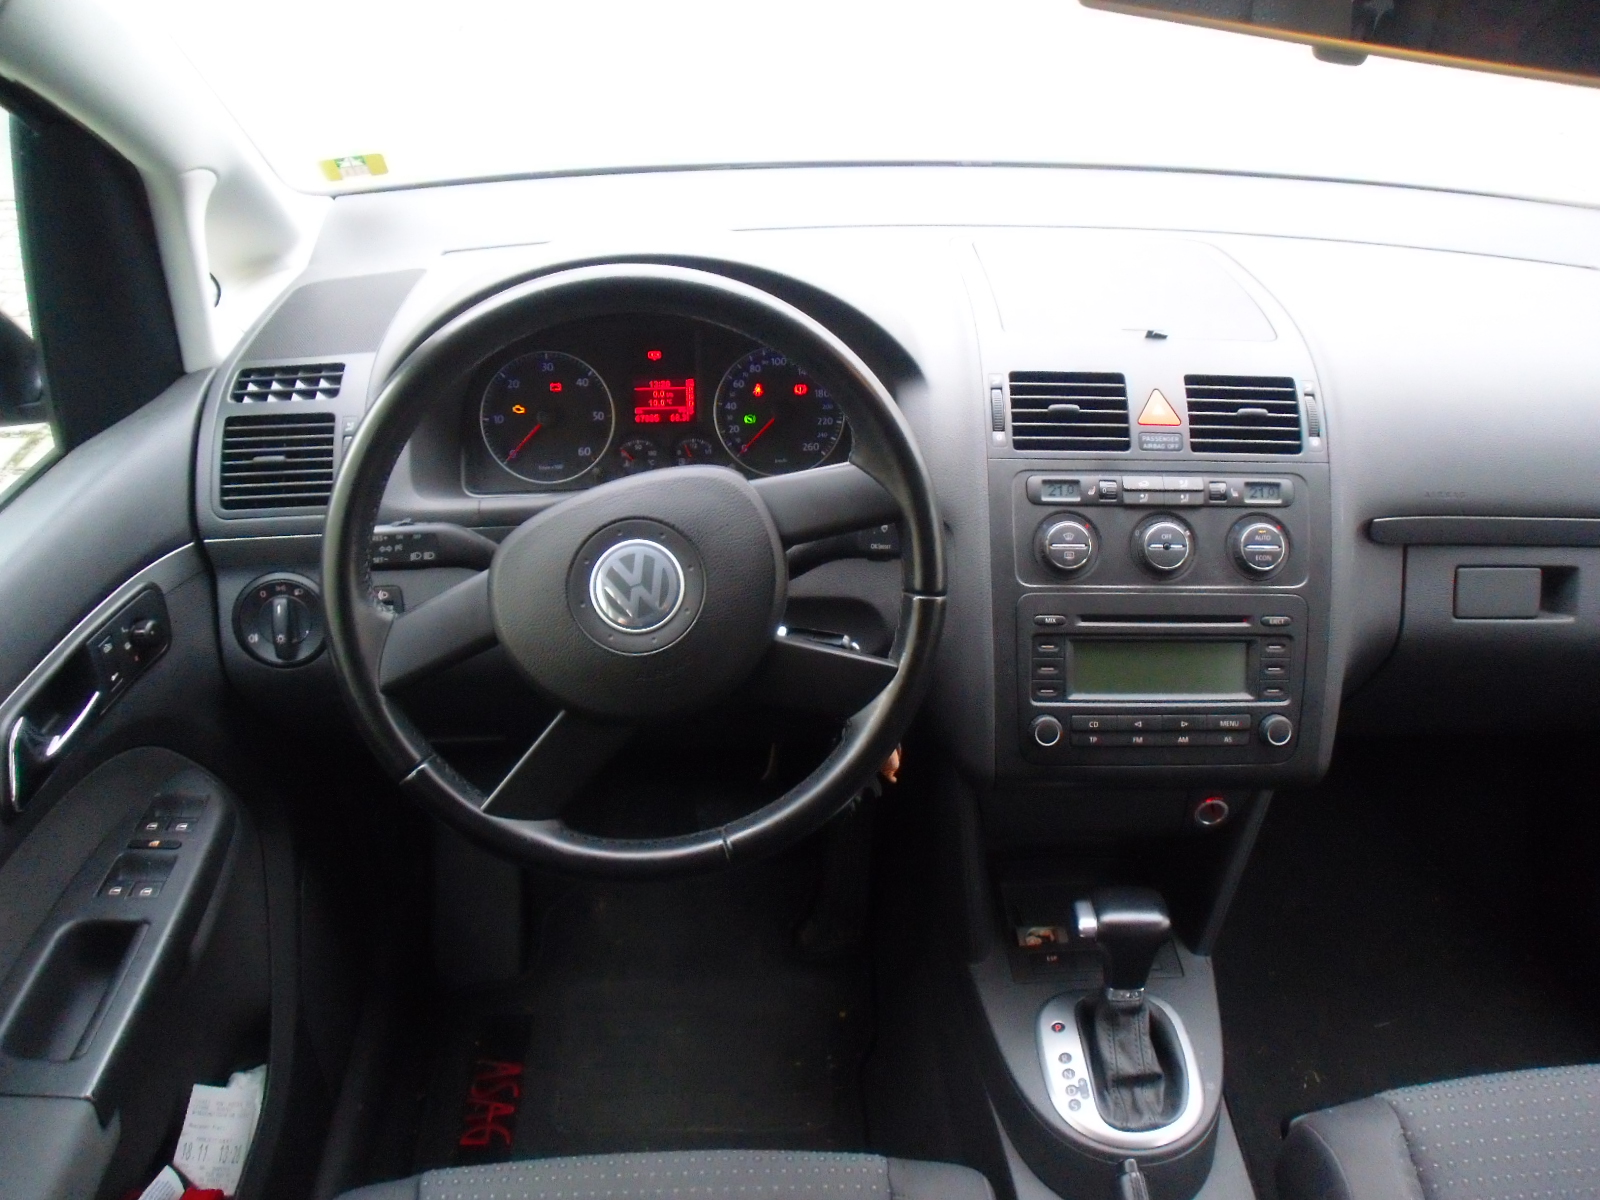 Volkswagen Touran 1.9 TDi Trendline